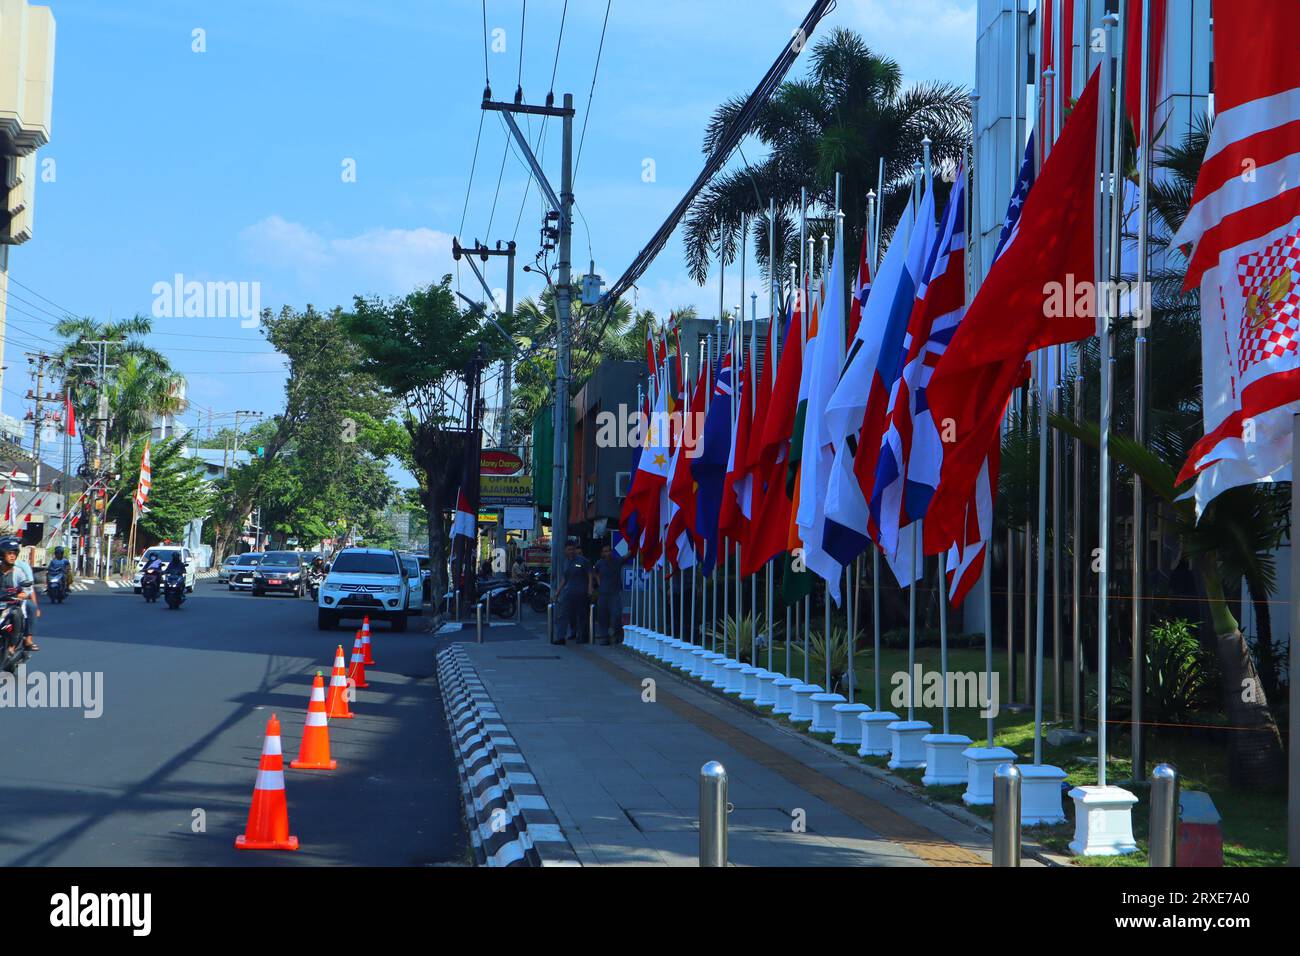 Flaggen der asean-Länder vor dem Hotel angebracht Stockfoto